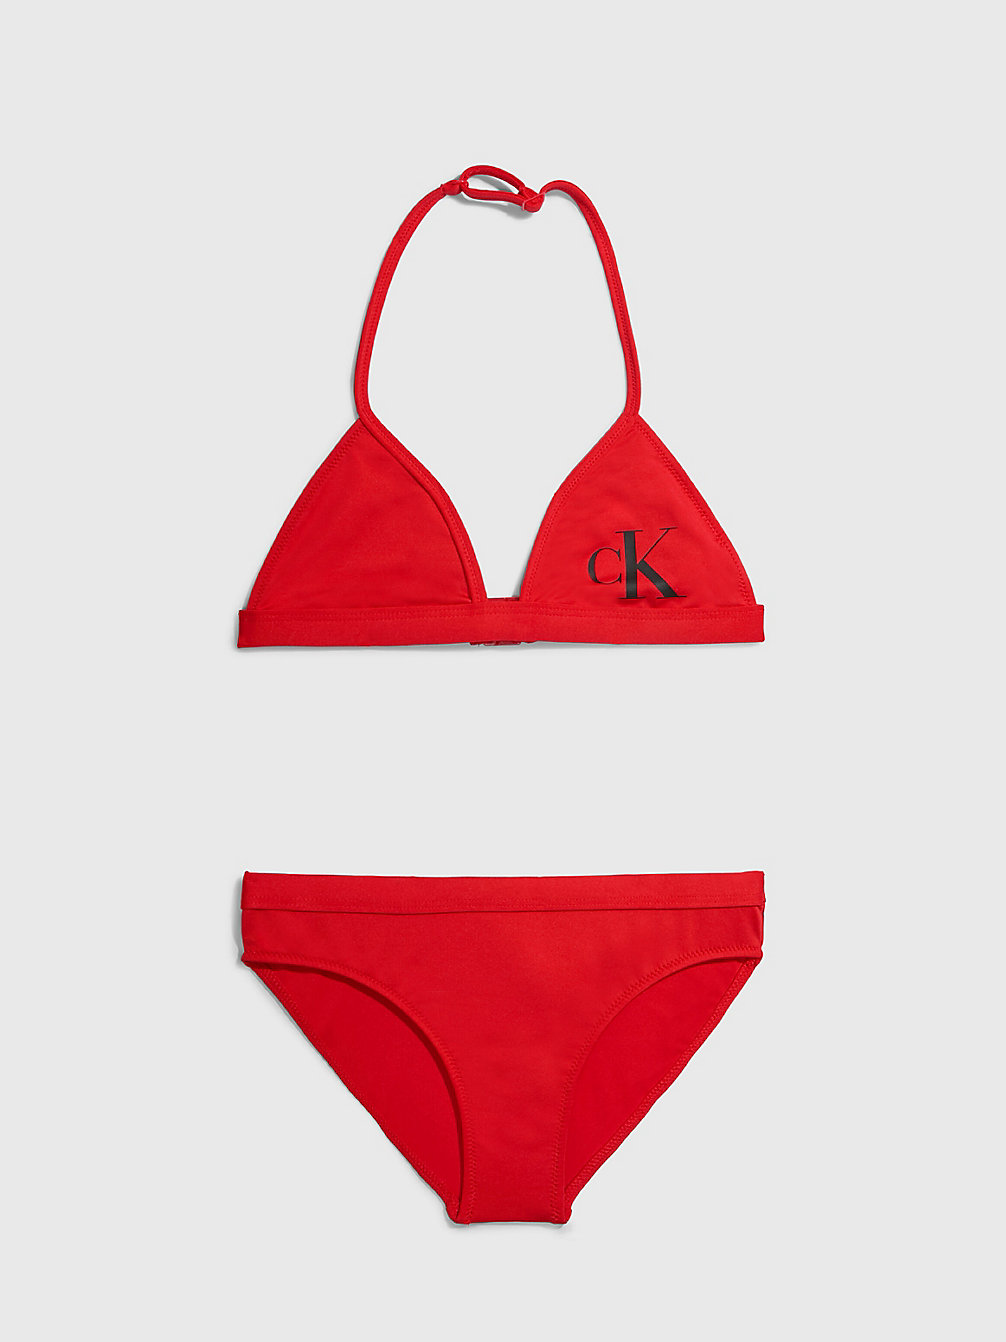 CAJUN RED > Dziewczęcy Zestaw Bikini Z Trójkątną Górą - CK Monogram > undefined girls - Calvin Klein